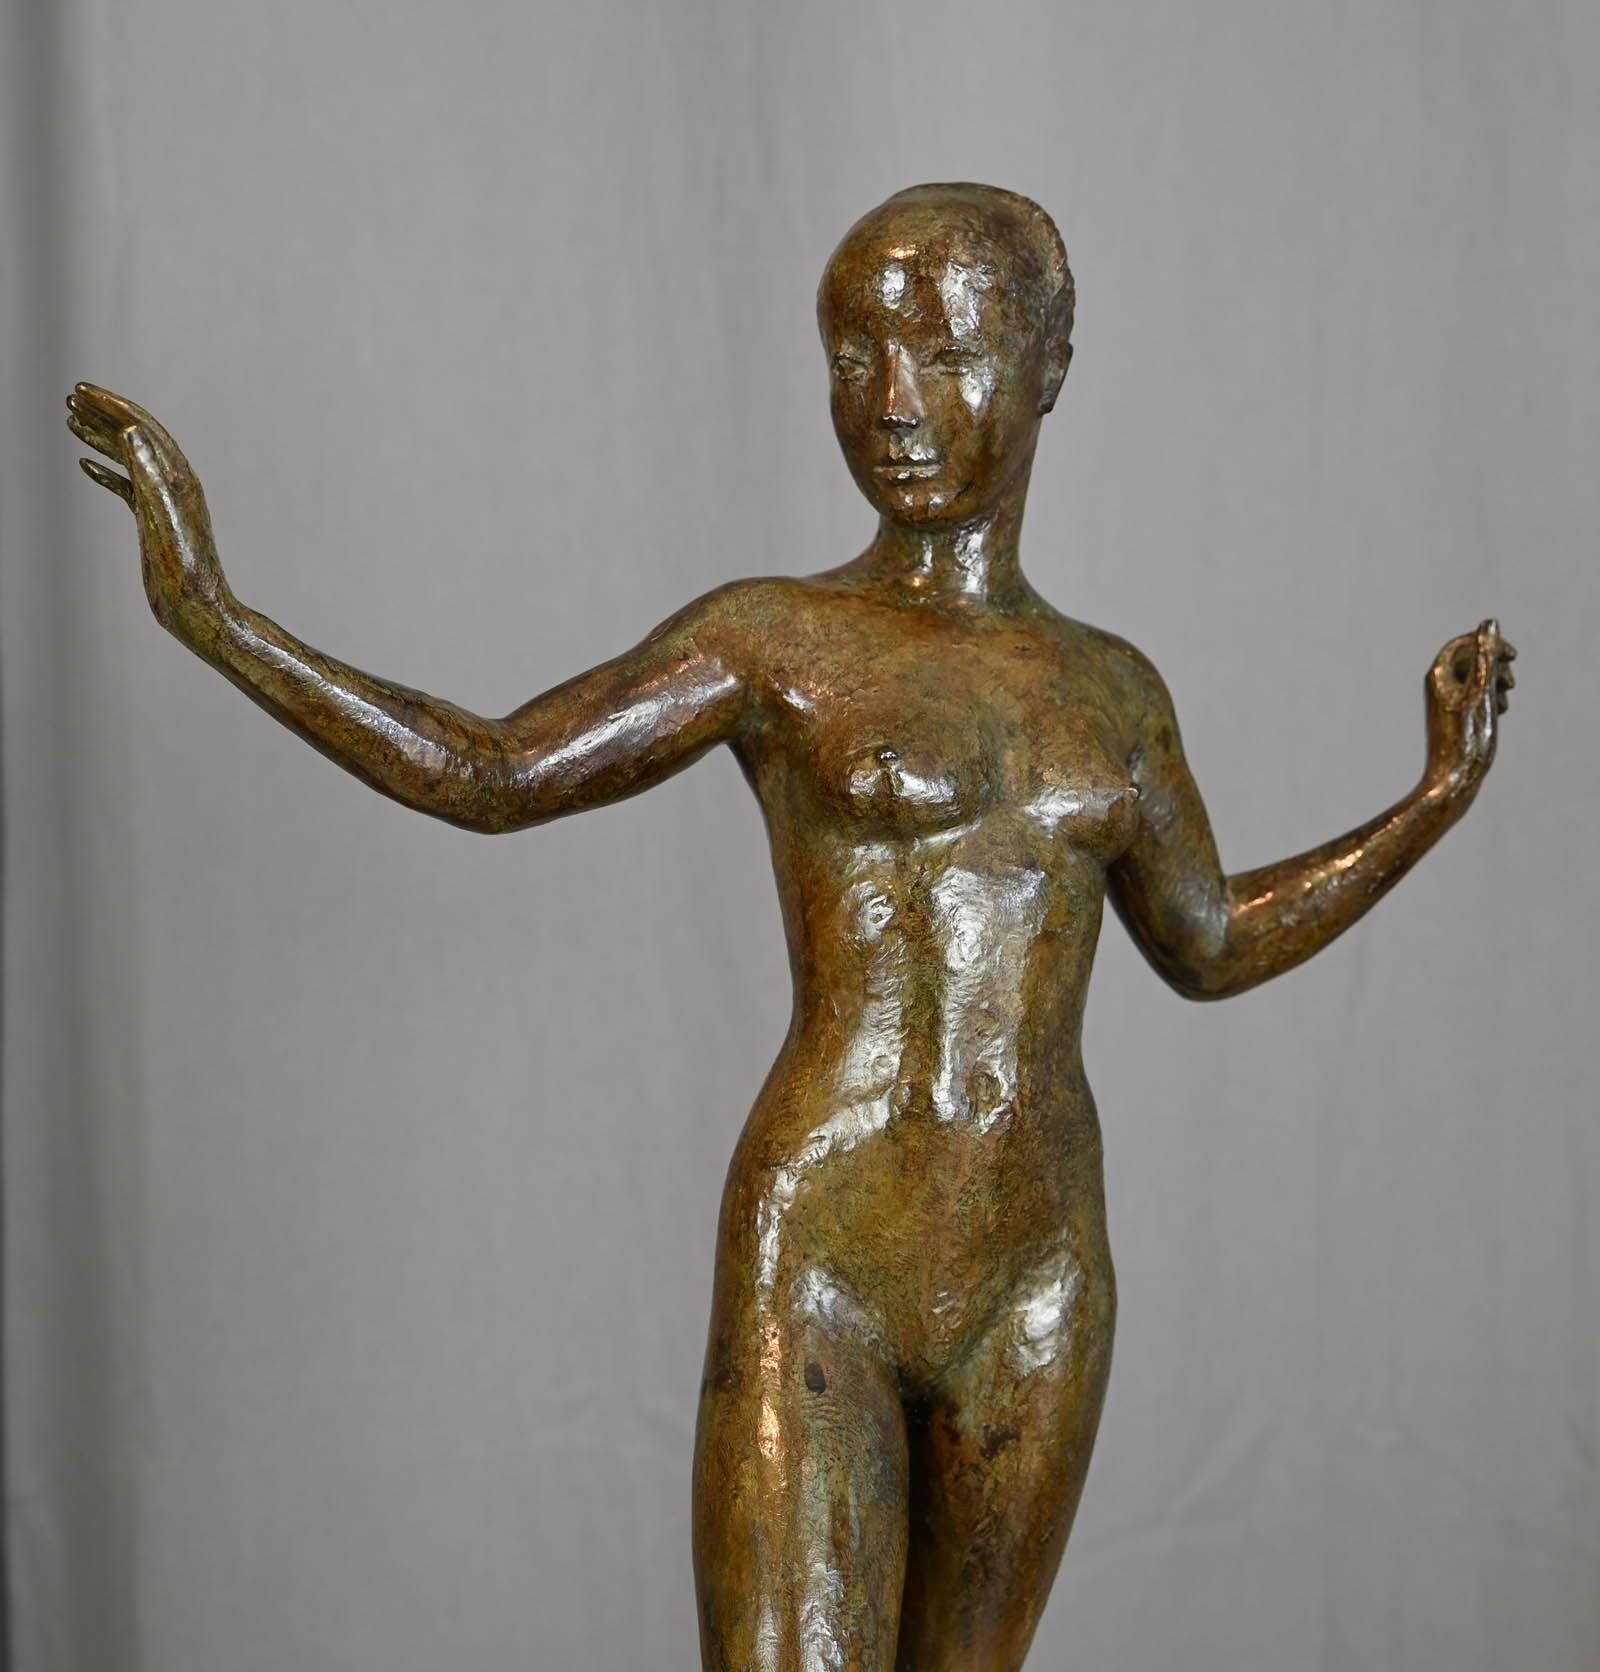 Jacques COQUILLAY (geboren 1935) 

Marie

Original Bronze
Größe: 56x39x17cm
Exemplar Nr. 4/8
Signatur und Nummerierung auf dem Sockel.
Original-Bronze, hergestellt mit 